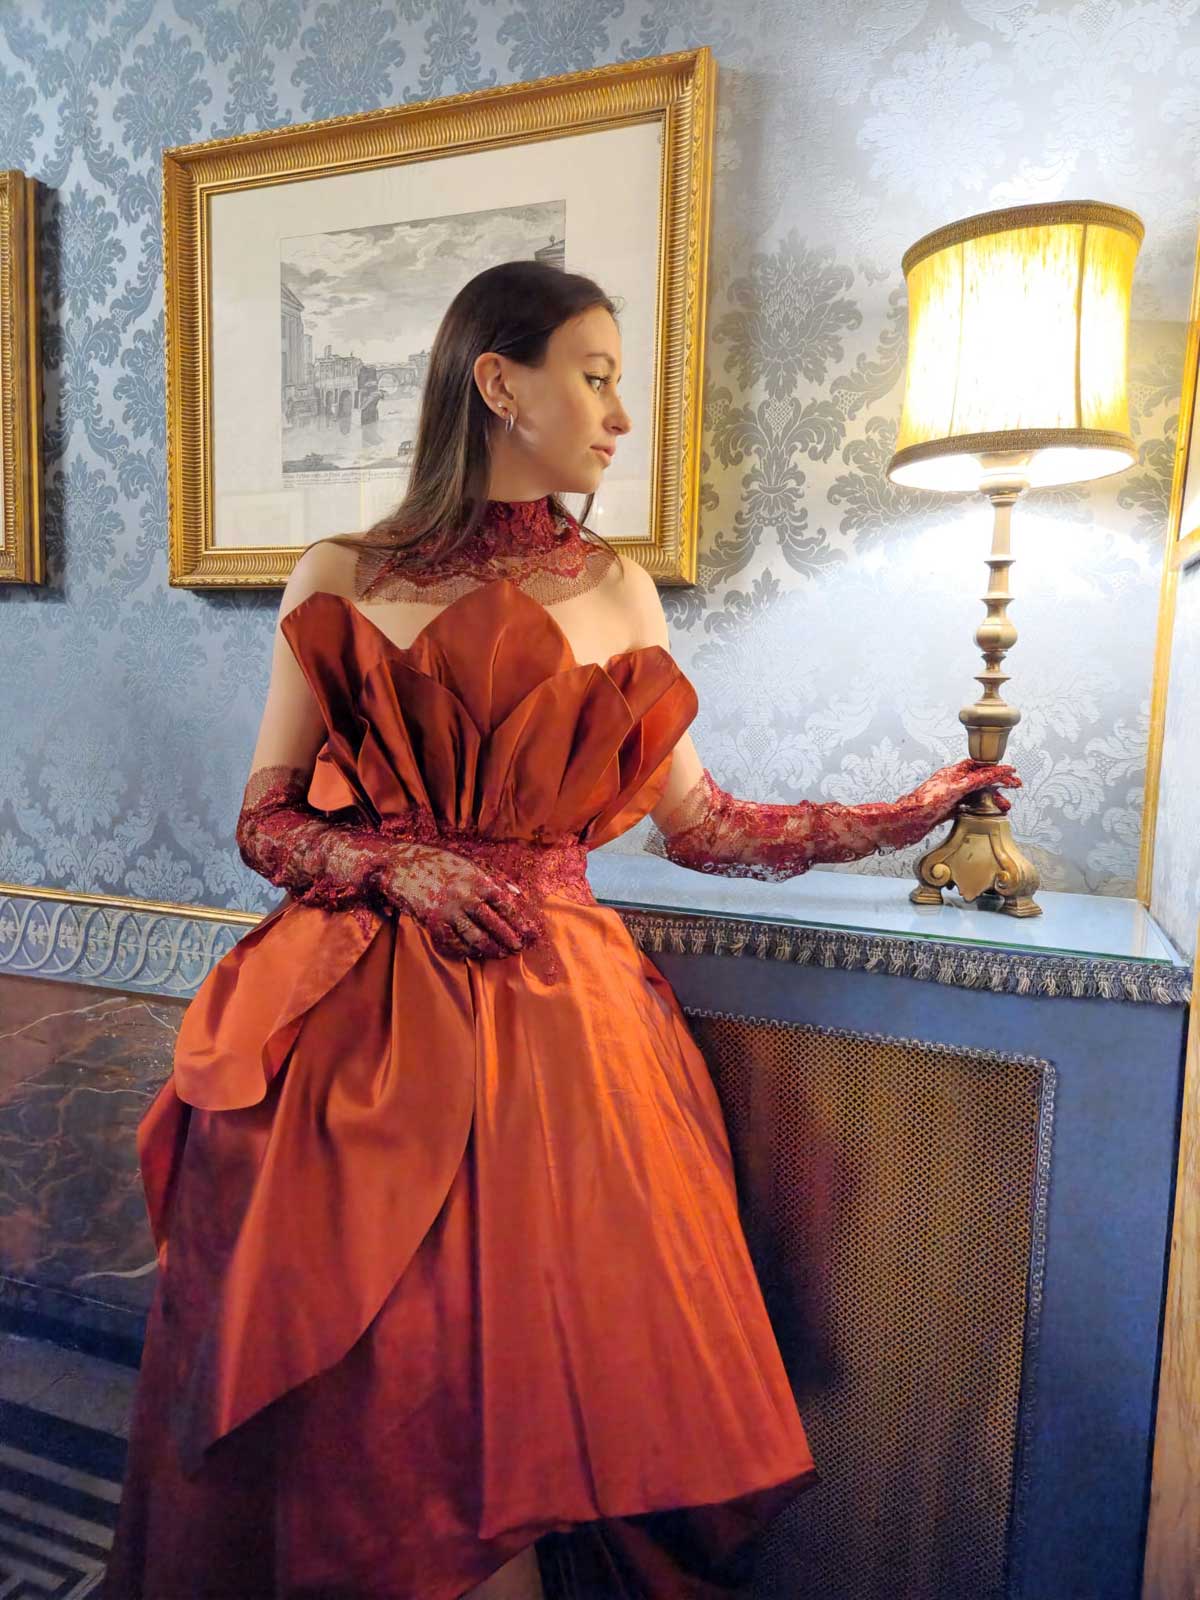 Mod’Art Roma - Il fascino dei colori - sfilata modelle nello storico Palazzo Ferrajoli - evento d’alta moda con gli eleganti abiti di Elins moda ragazza vestita in rosso bruno